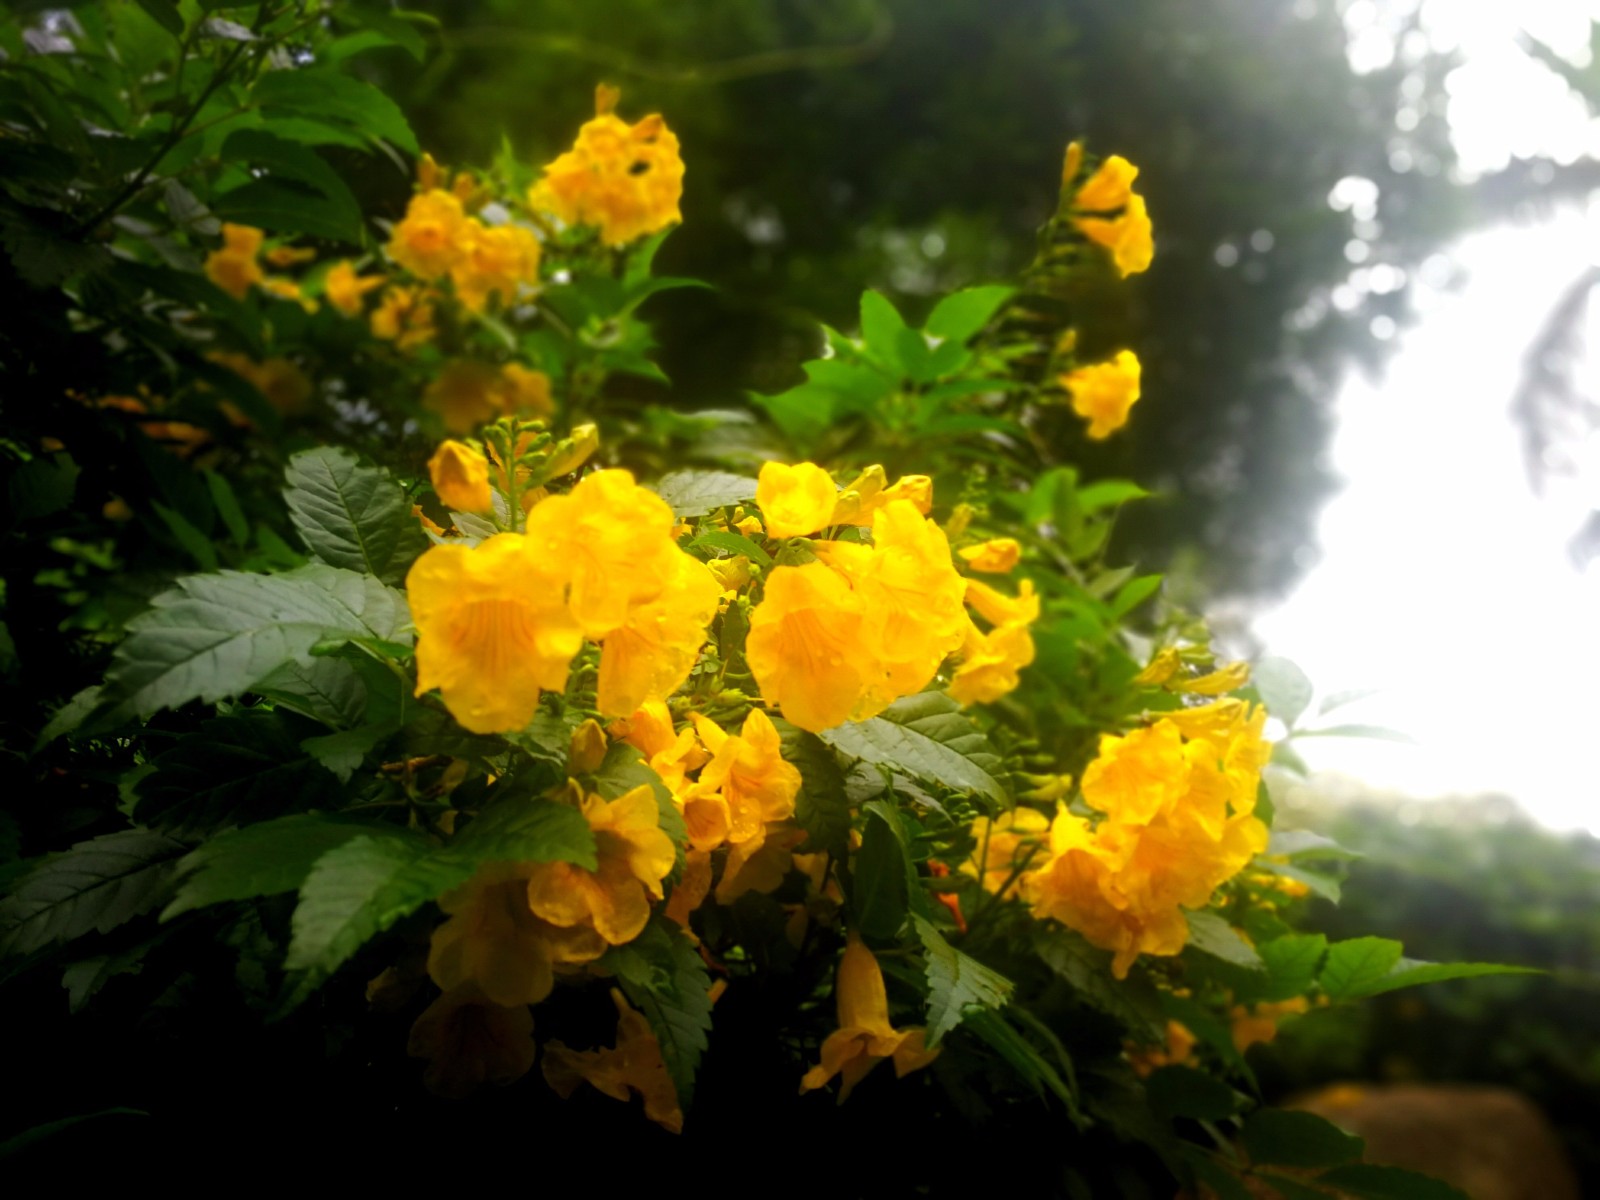 翠色欲滴的黄钟花引起围观,亮丽嫩黄迎来刷屏